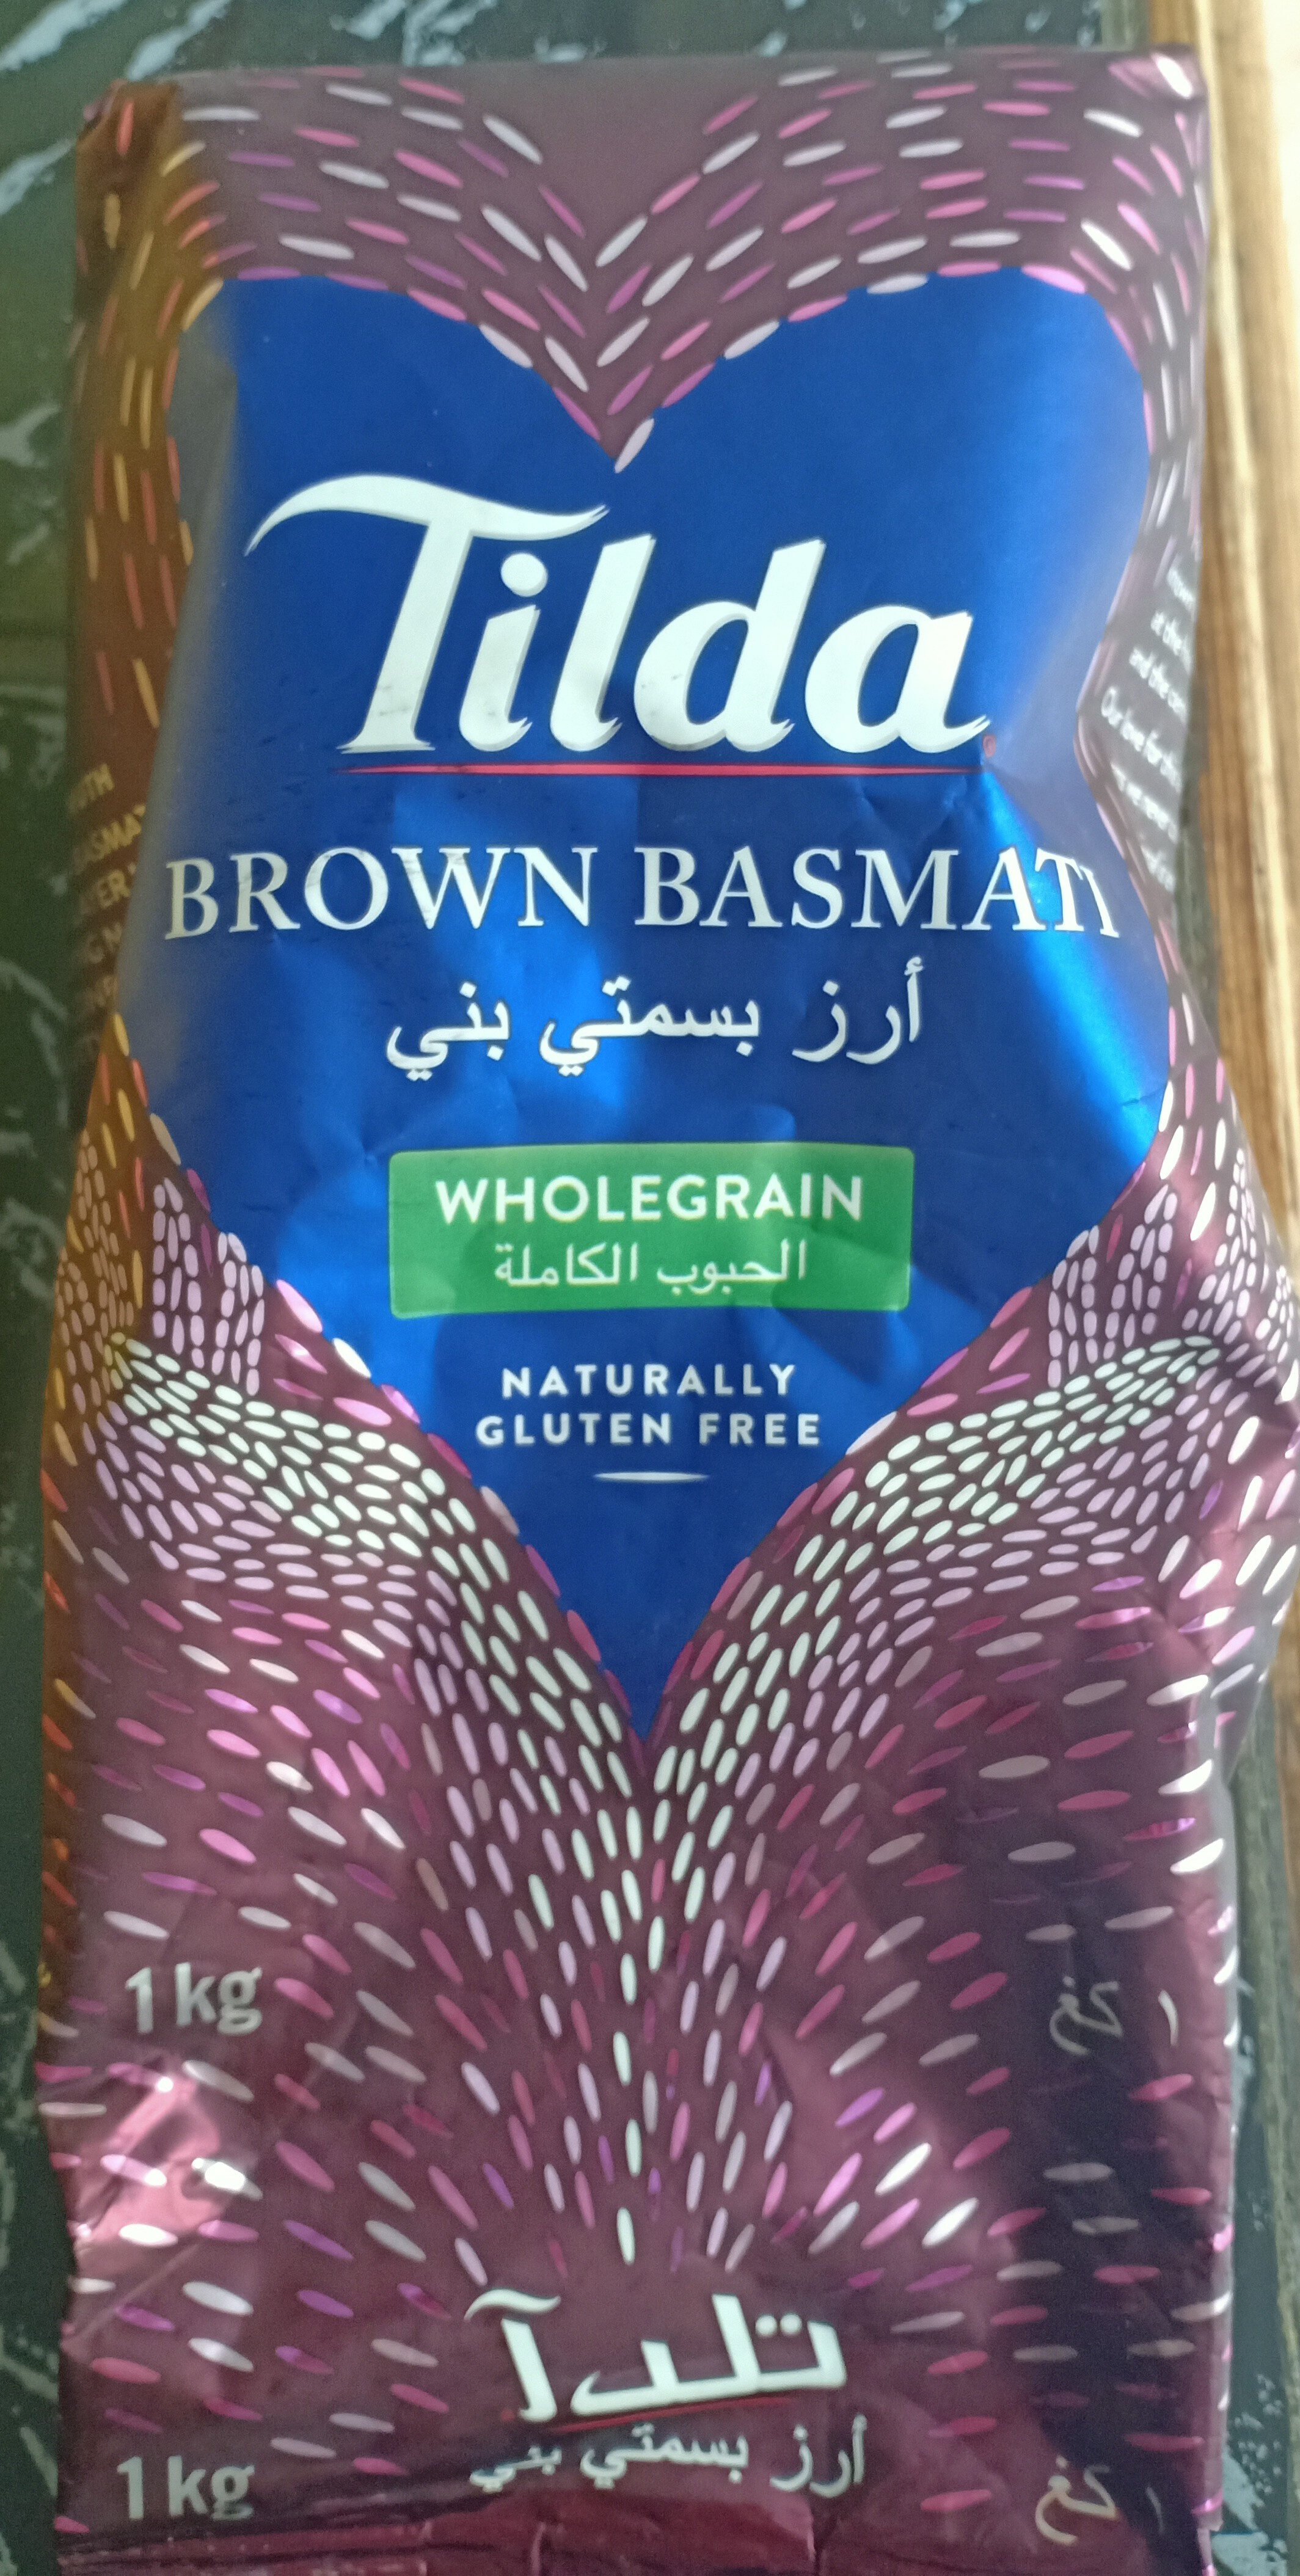 مجرى التعداد الوطني الفقر  Brown basmati rice - tilda - 1kg